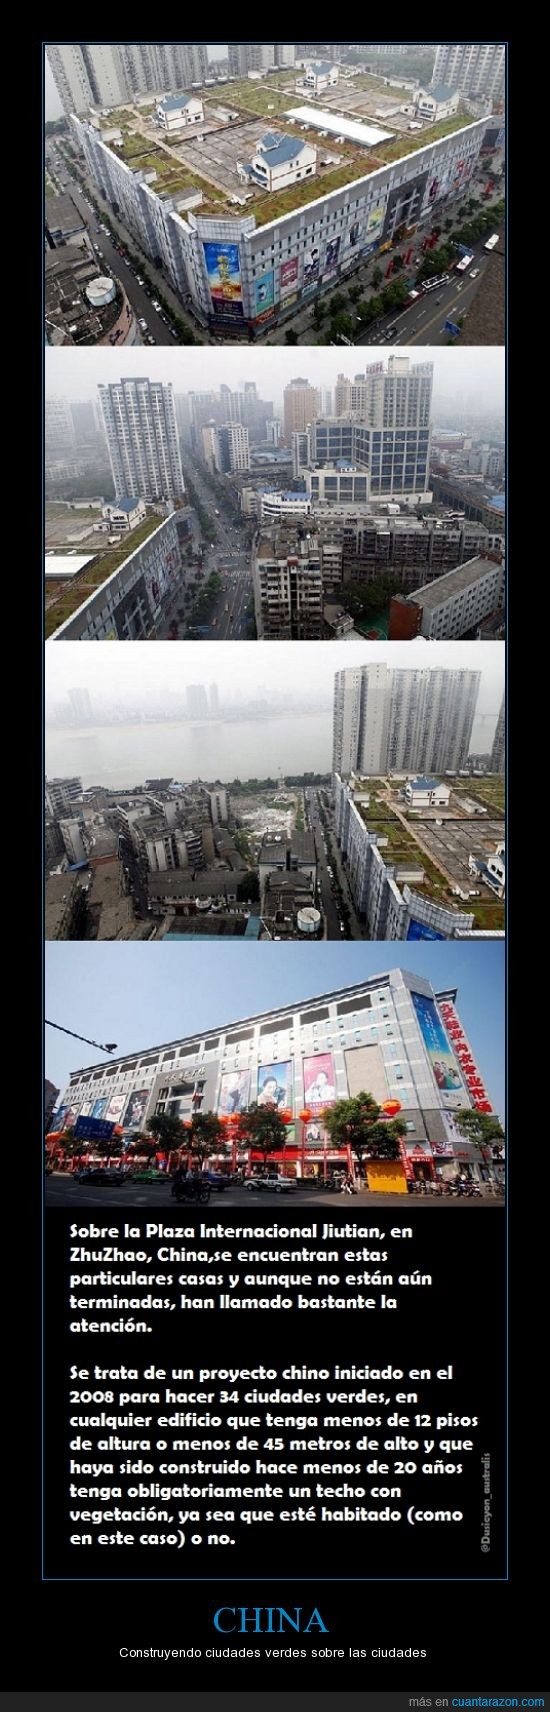 China,construir,cidades,ecologico,verde